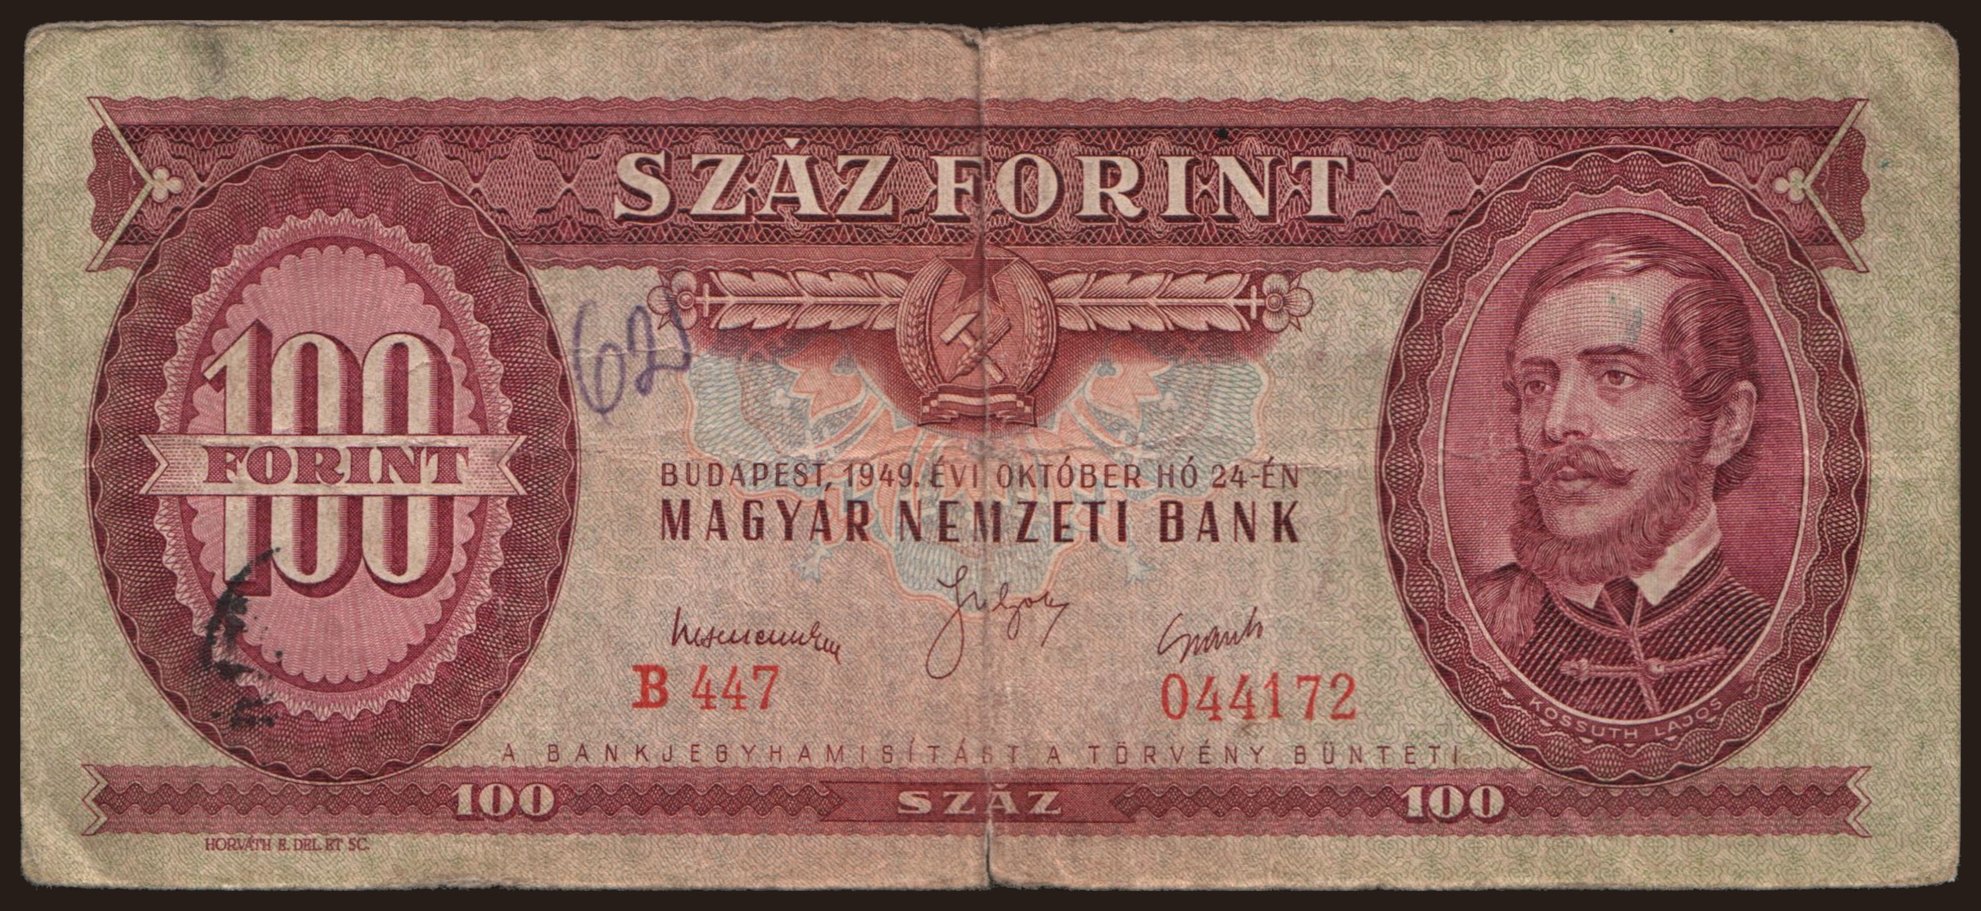 10 forint, 1949